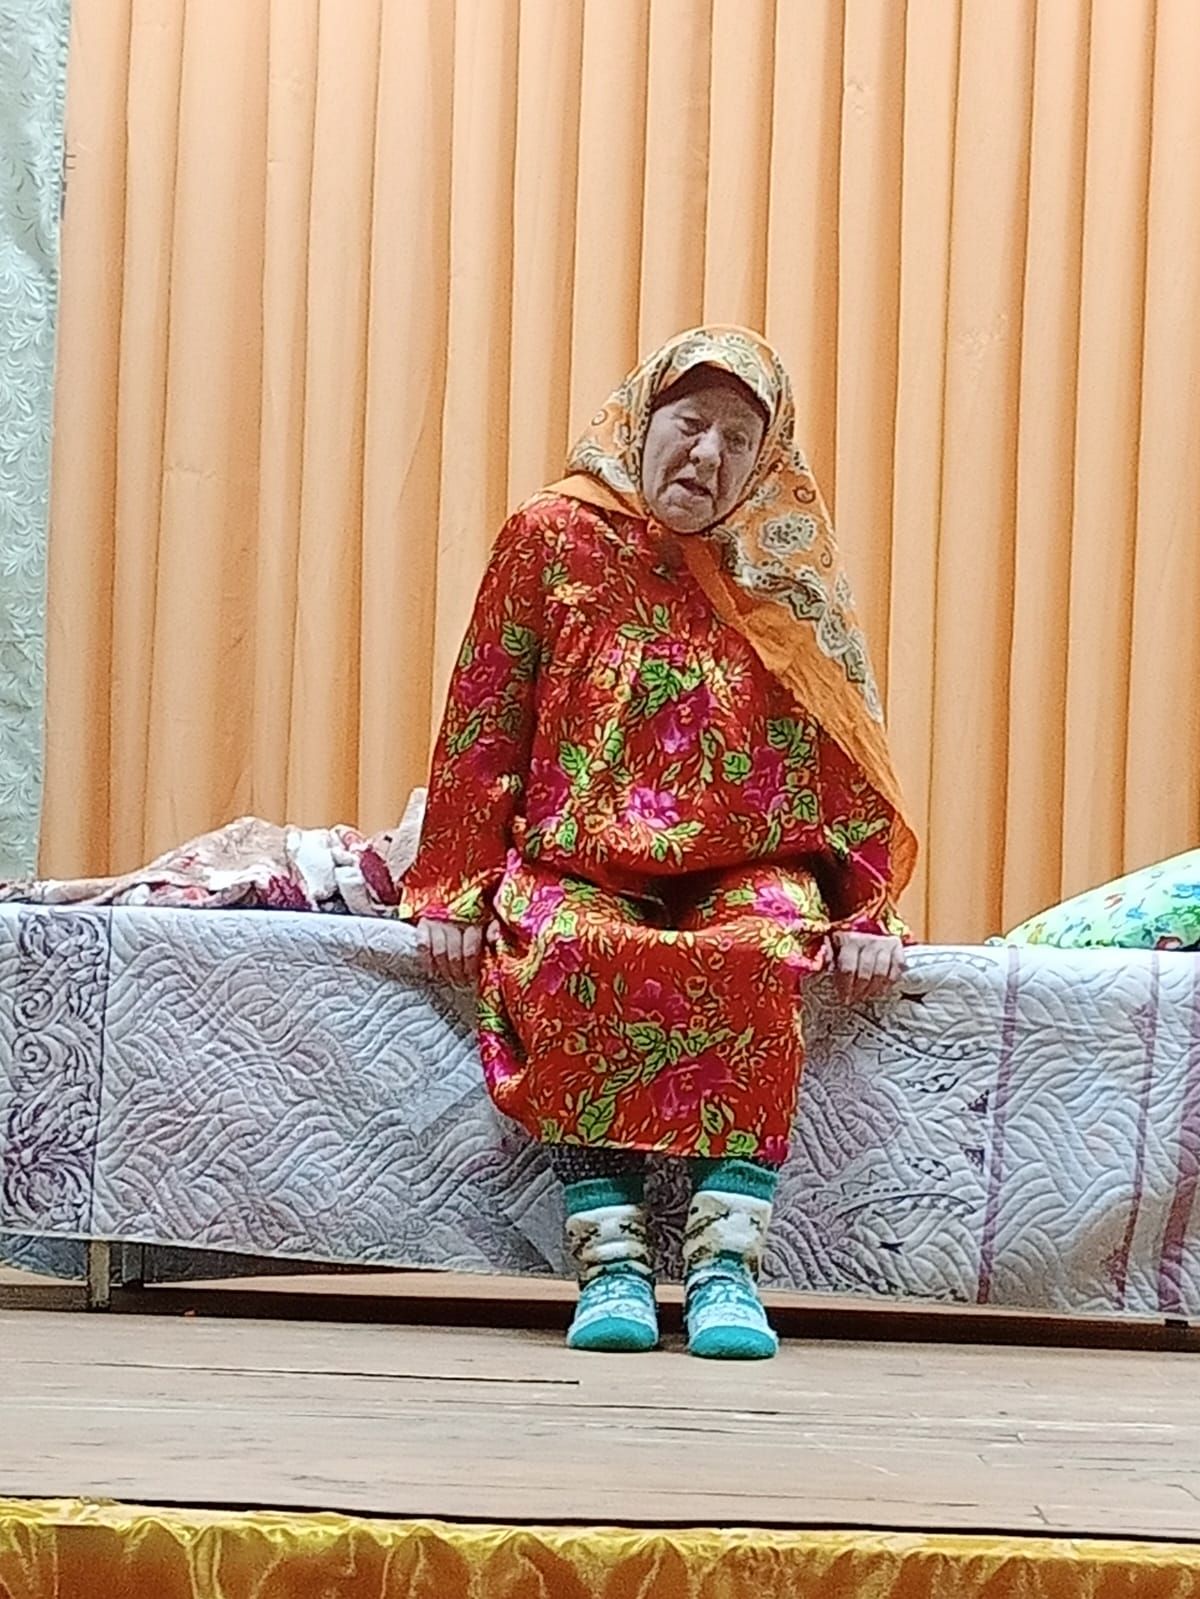 В Акбашском СДК стартовал конкурс театральных сельских коллективов